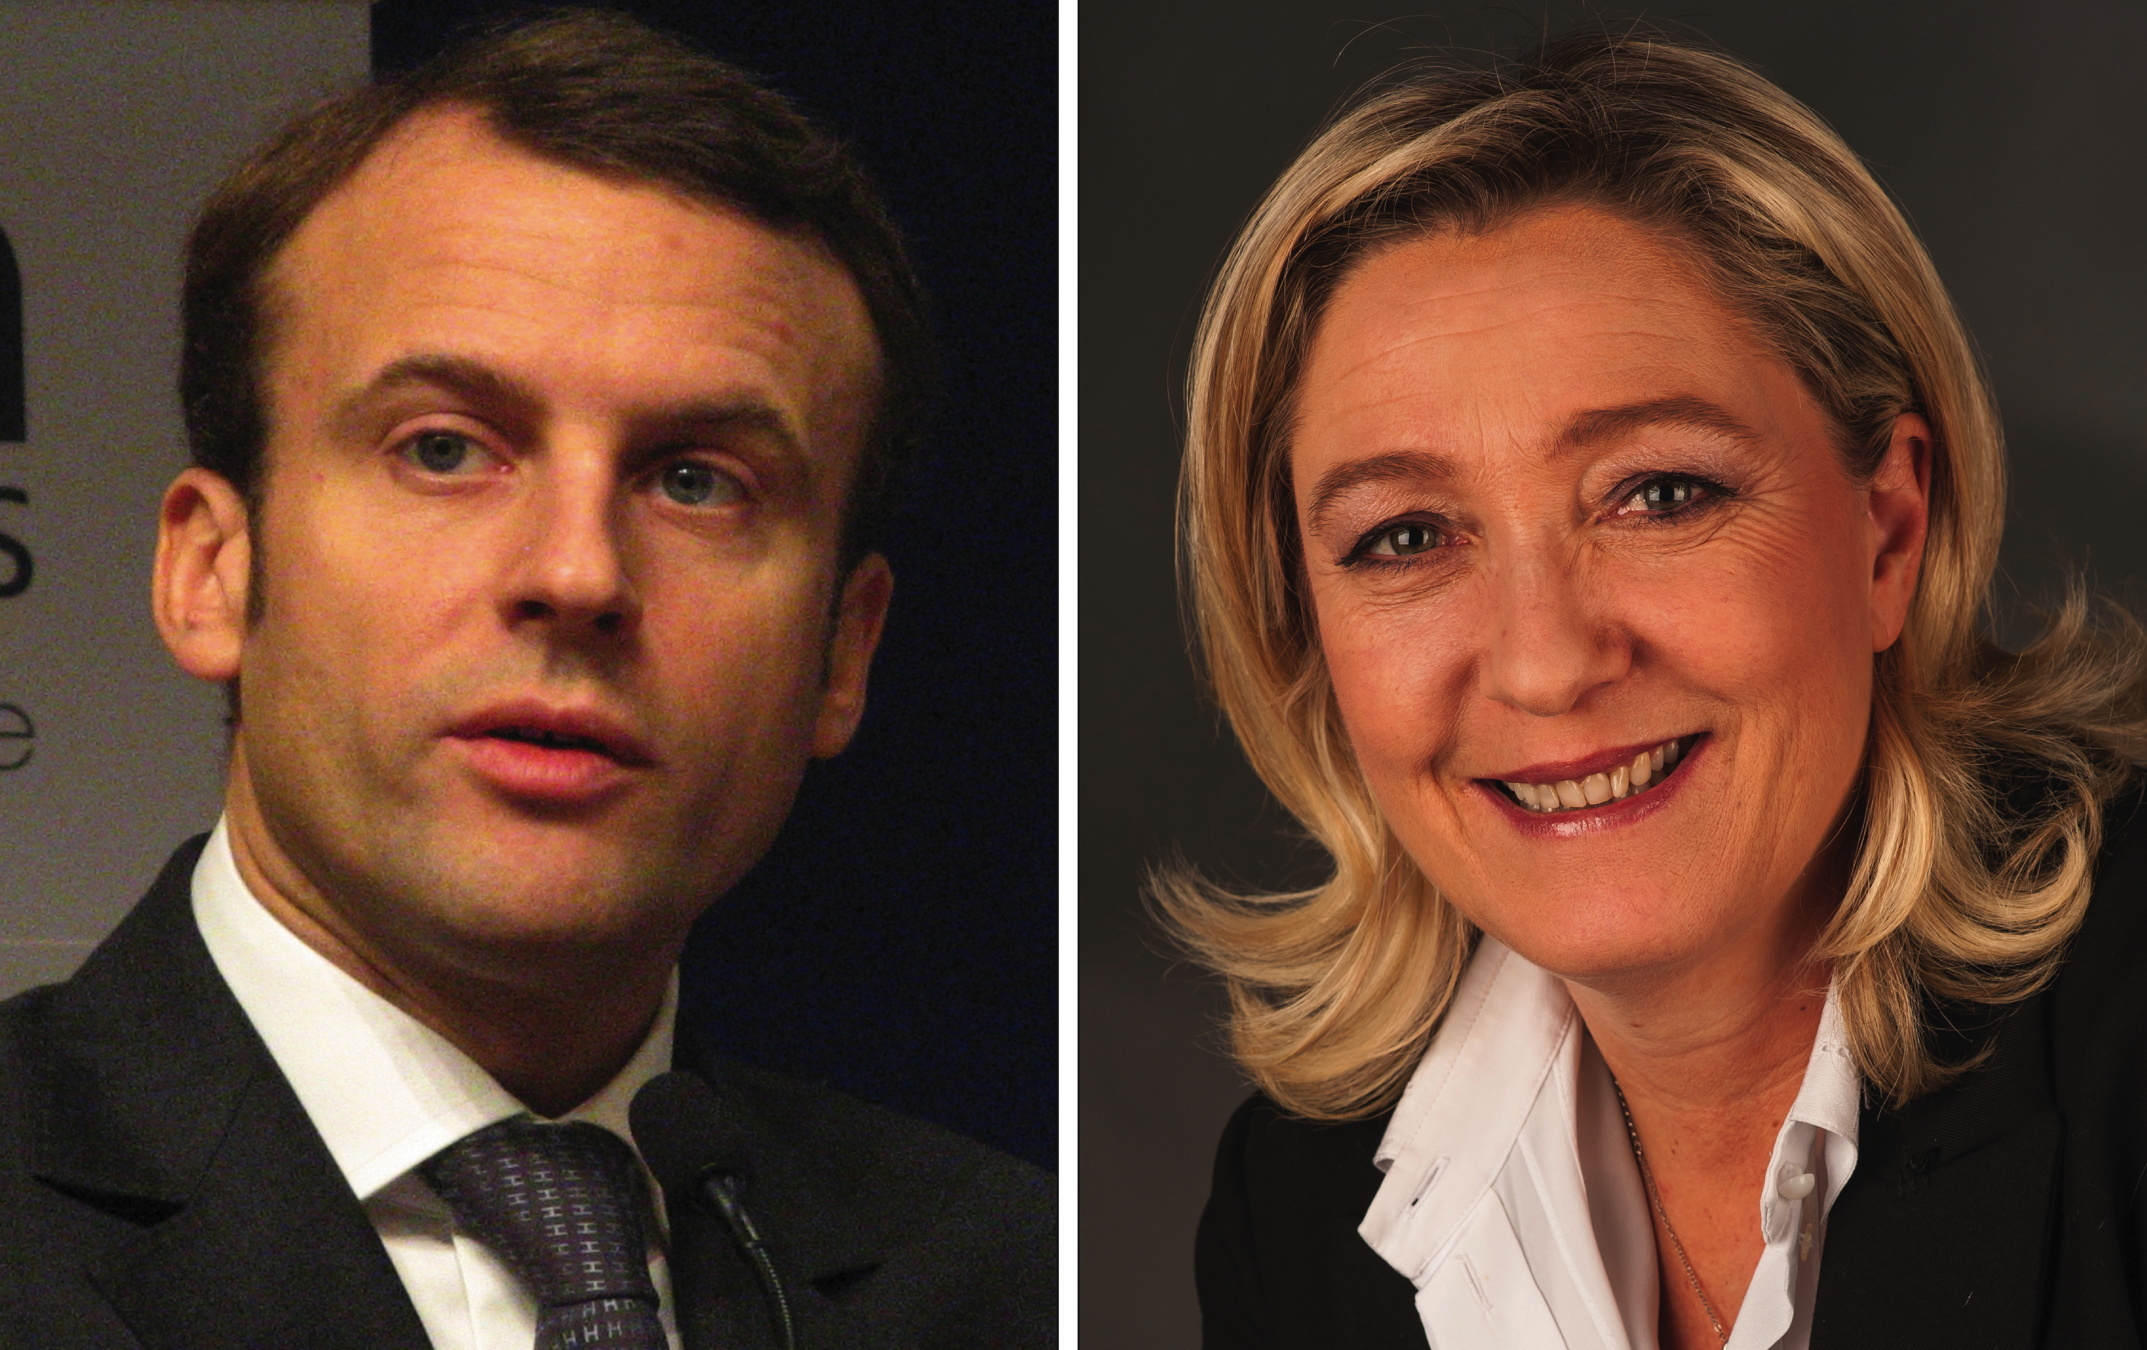 Marine Le Pen presque à égalité avec Macron dans un sondage pour les présidentielles 2022. - Crédits : CC BY-SA 4.0 / Foto-AG Gymnasium Melle